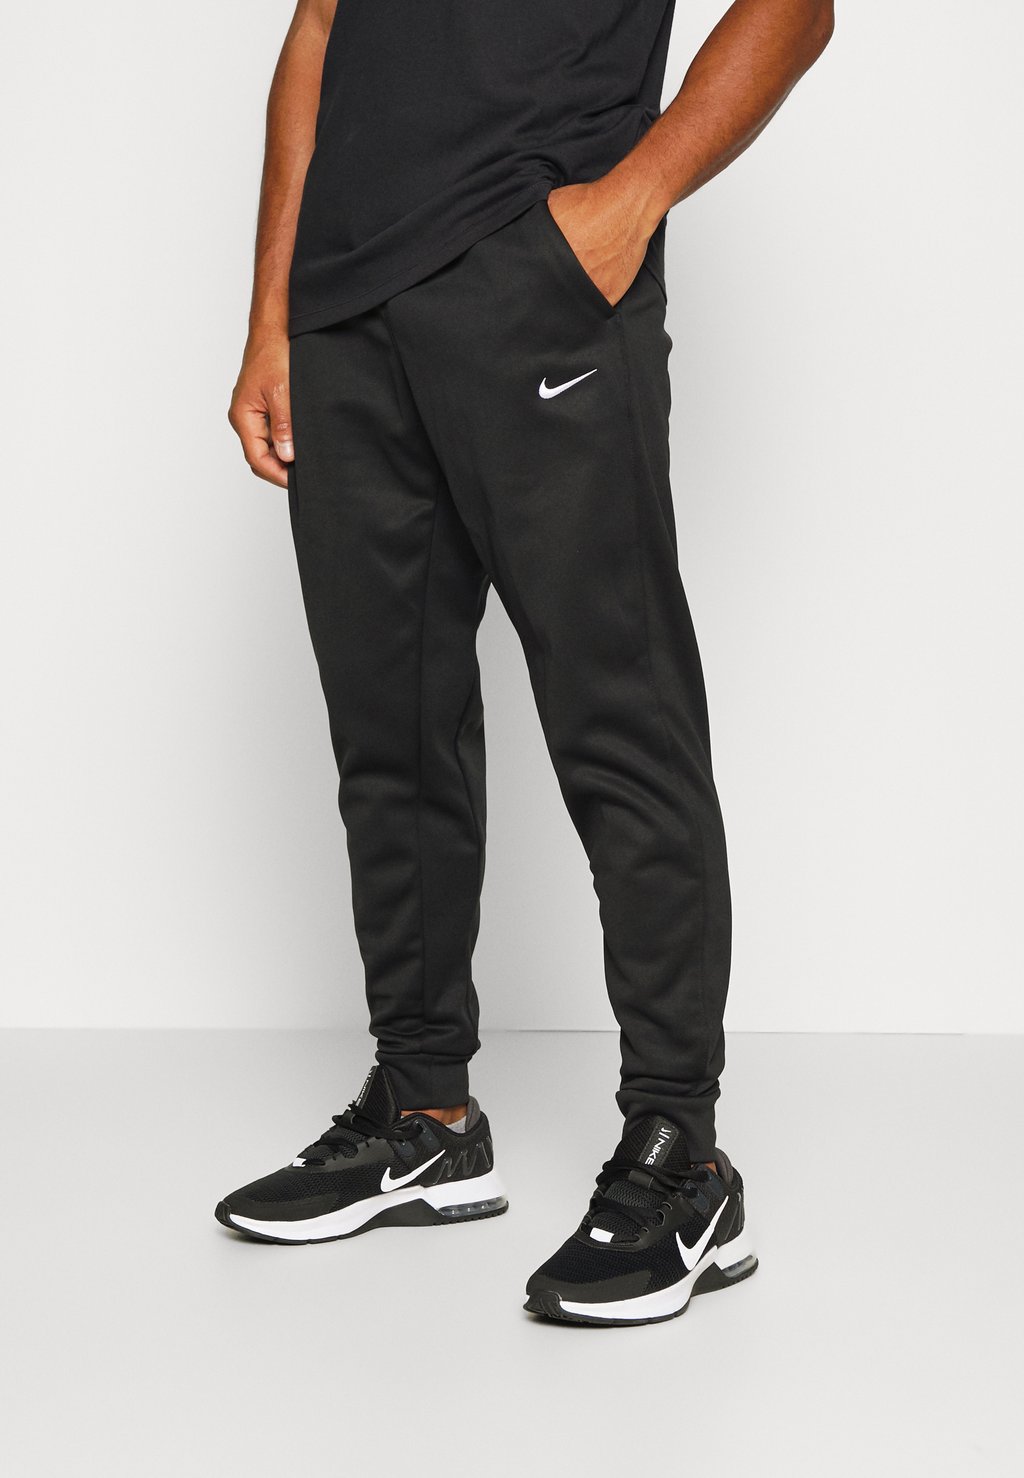 Спортивные брюки PANT TAPER Nike, черный/белый спортивные брюки pant taper nike цвет deep jungle black